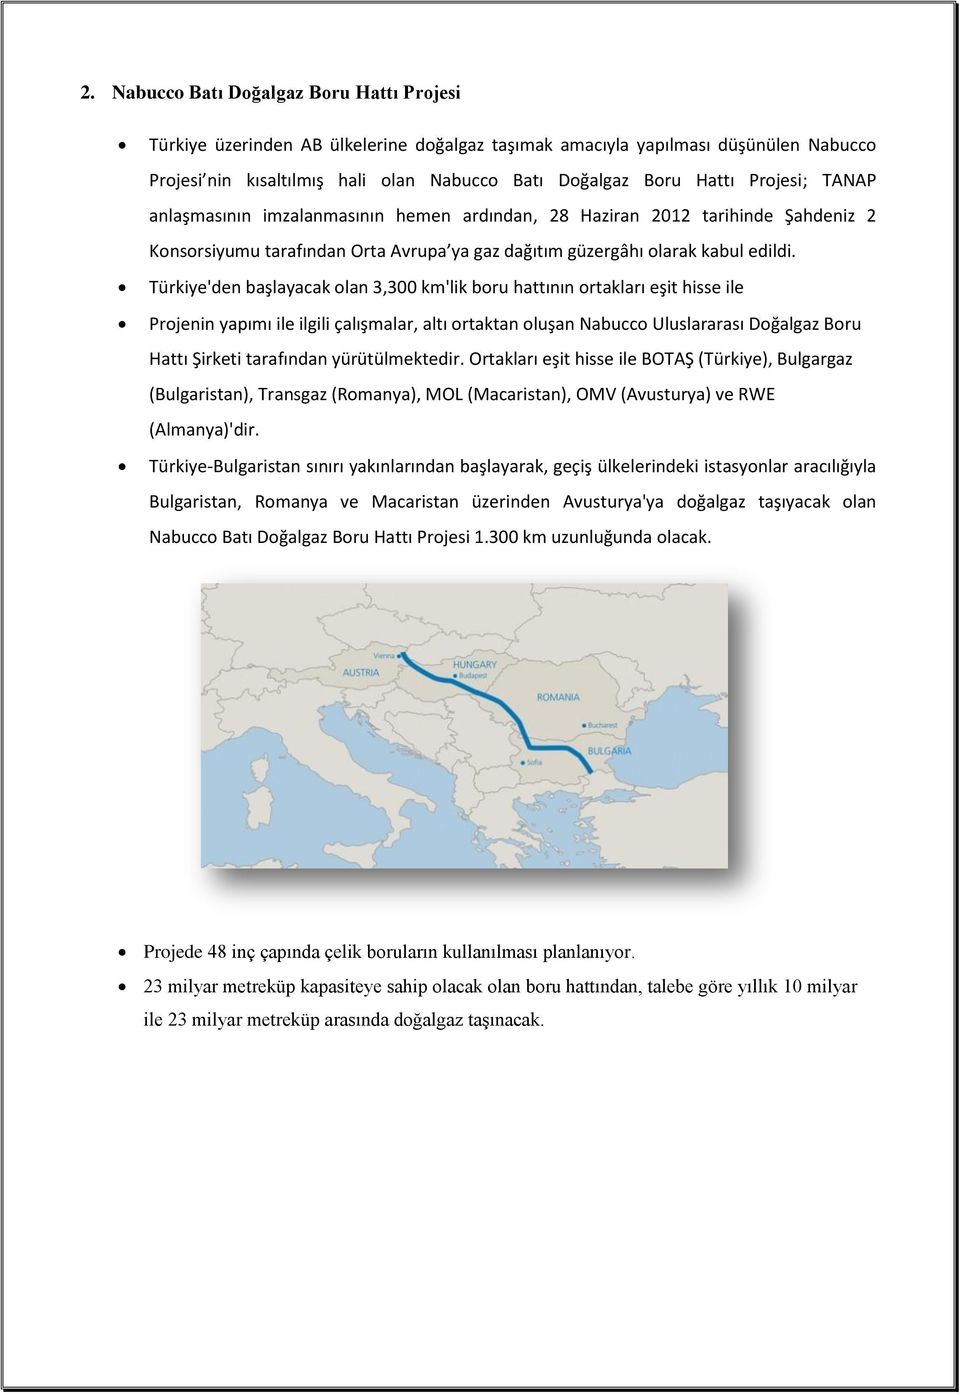 Türkiye'den başlayacak olan 3,300 km'lik boru hattının ortakları eşit hisse ile Projenin yapımı ile ilgili çalışmalar, altı ortaktan oluşan Nabucco Uluslararası Doğalgaz Boru Hattı Şirketi tarafından